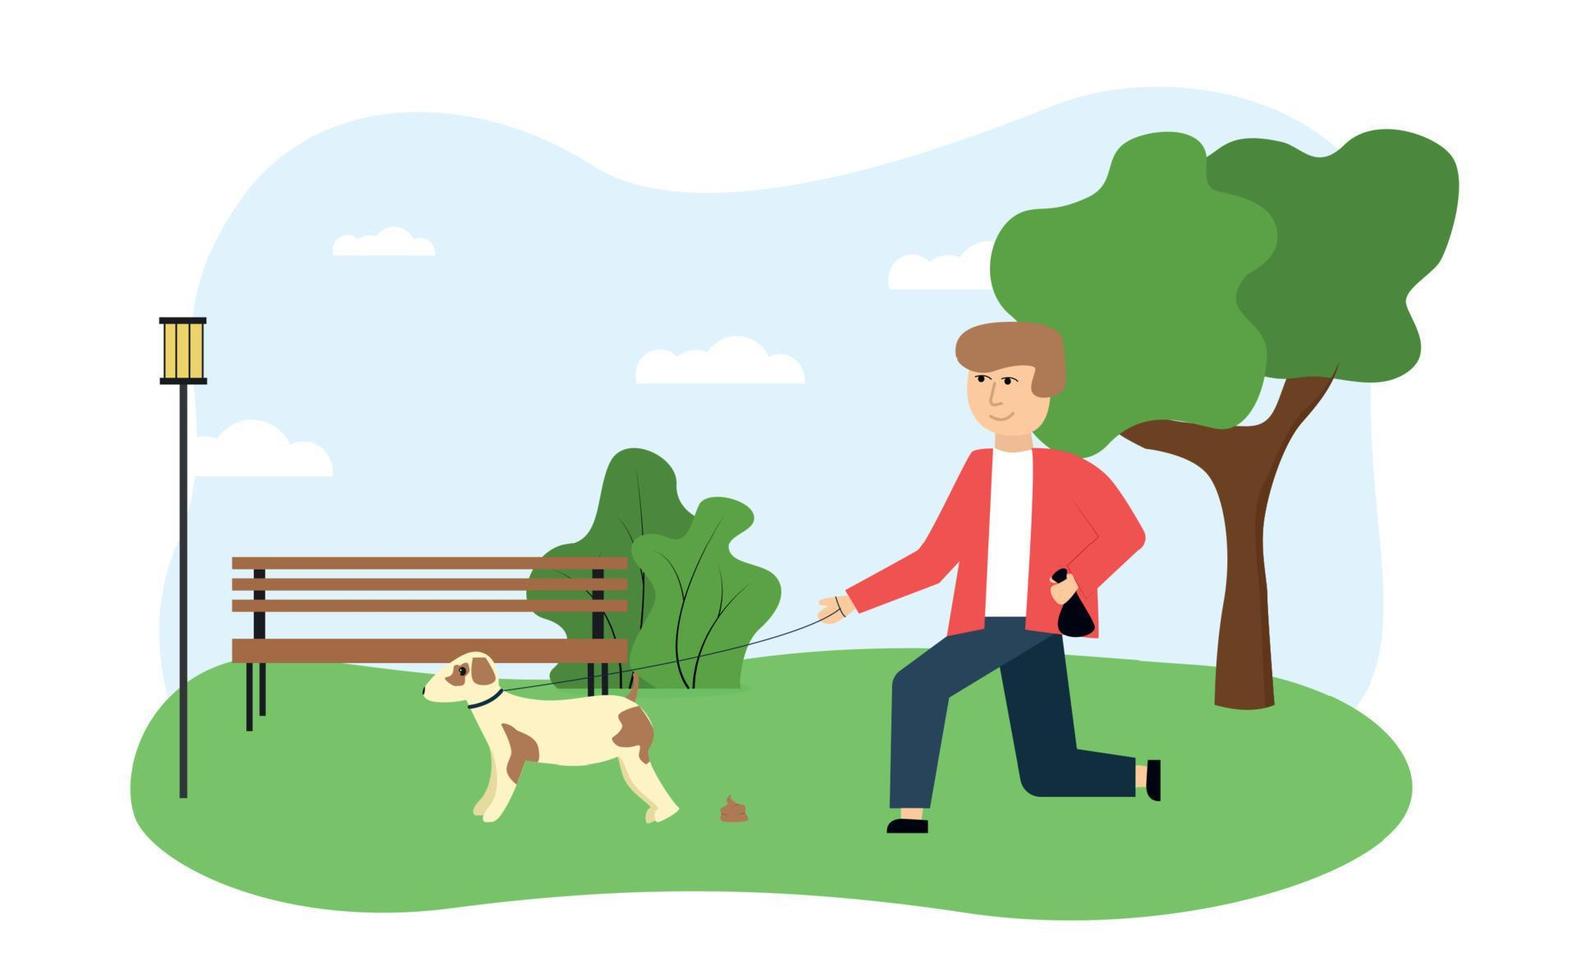 ekologi illustration. på de bild de kille promenader de hund i de parkera, avlägsnande de avfall Produkter av de djur, mot de bakgrund av en träd, bänk, buske, lykta vektor